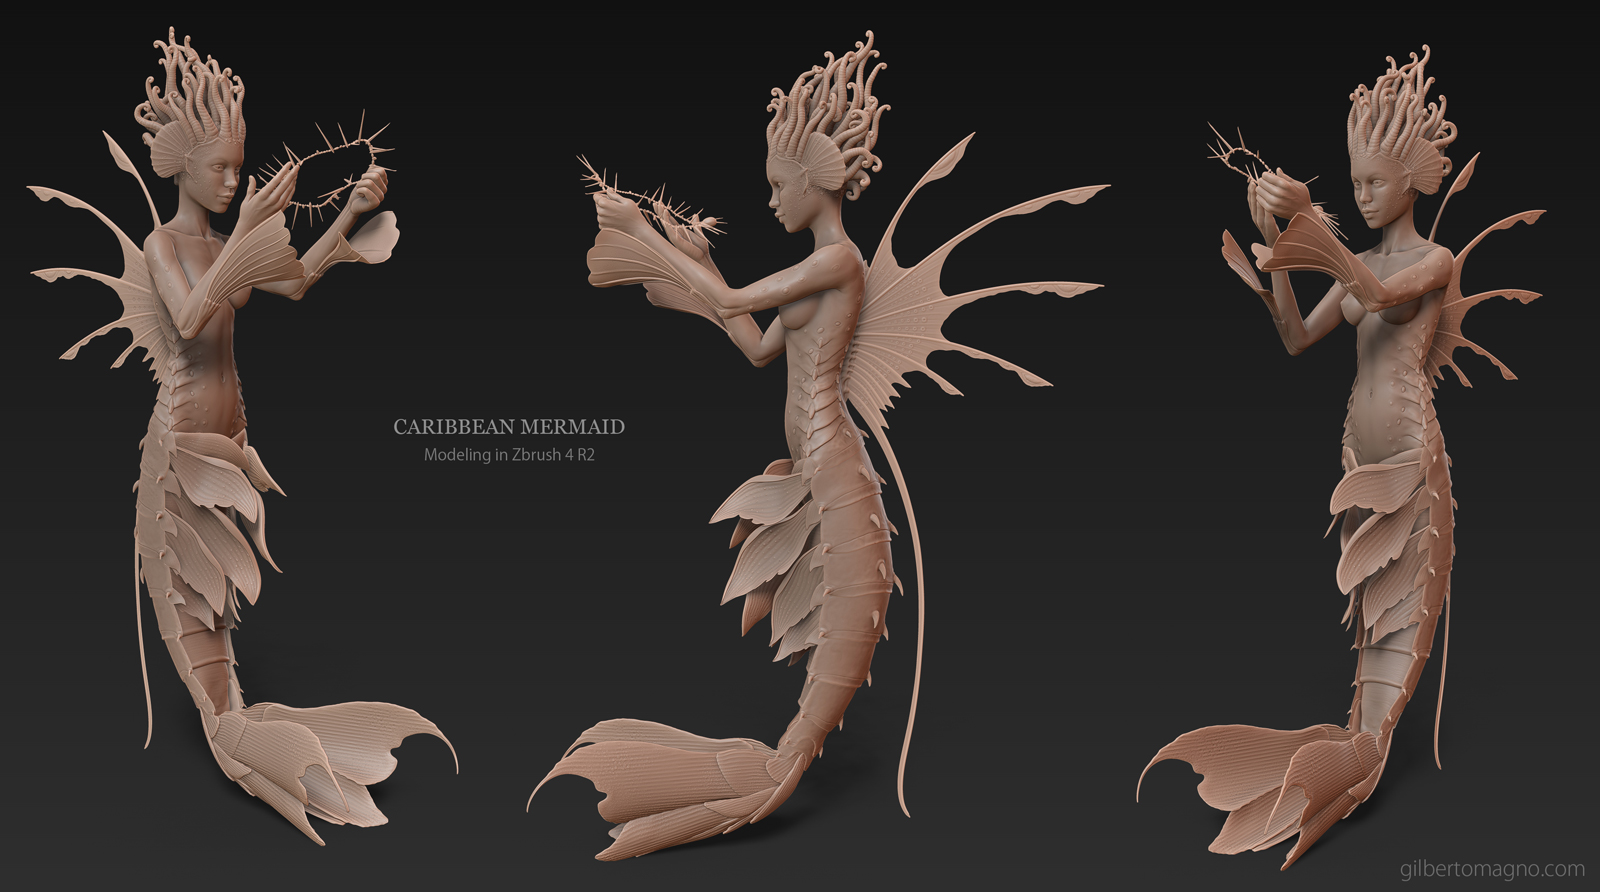 mermaid_modeling